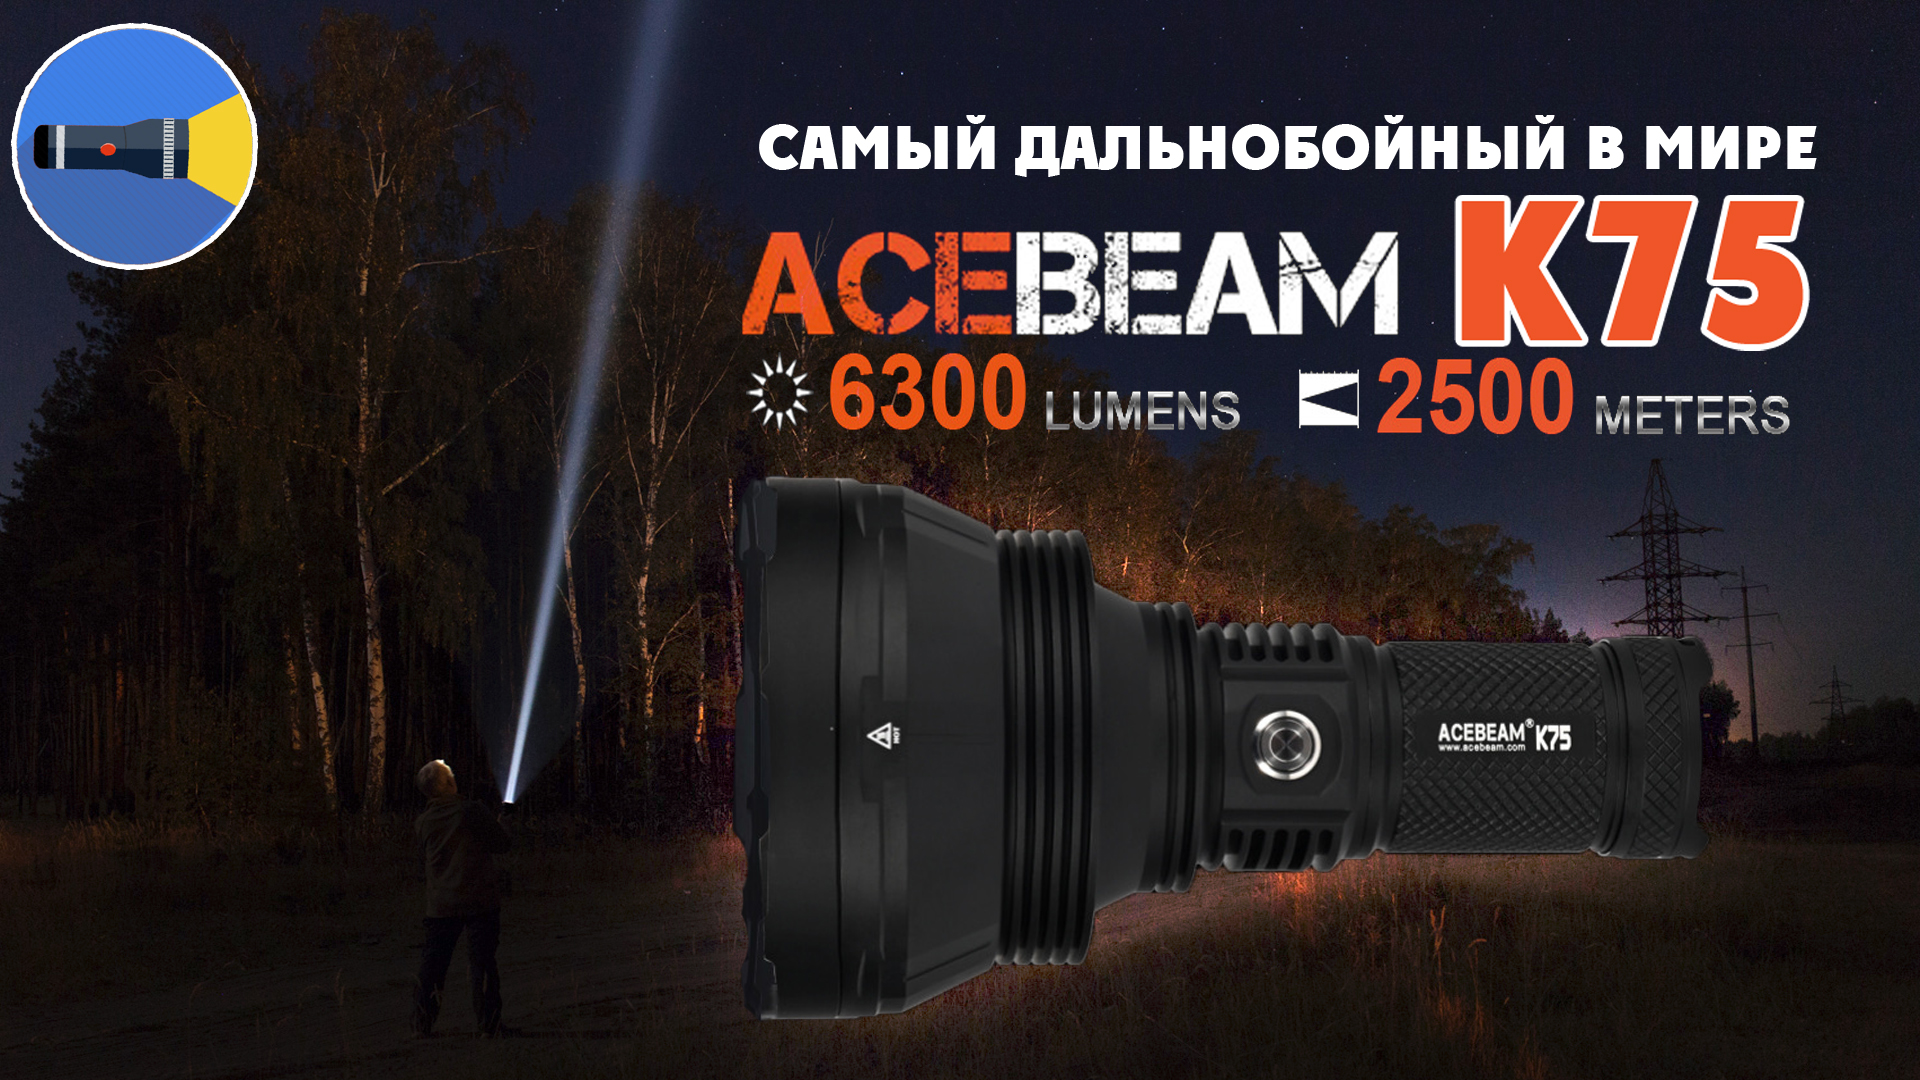 Acebeam K75: أطول مصباح يدوي بعيد المدى في العالم؟ 91